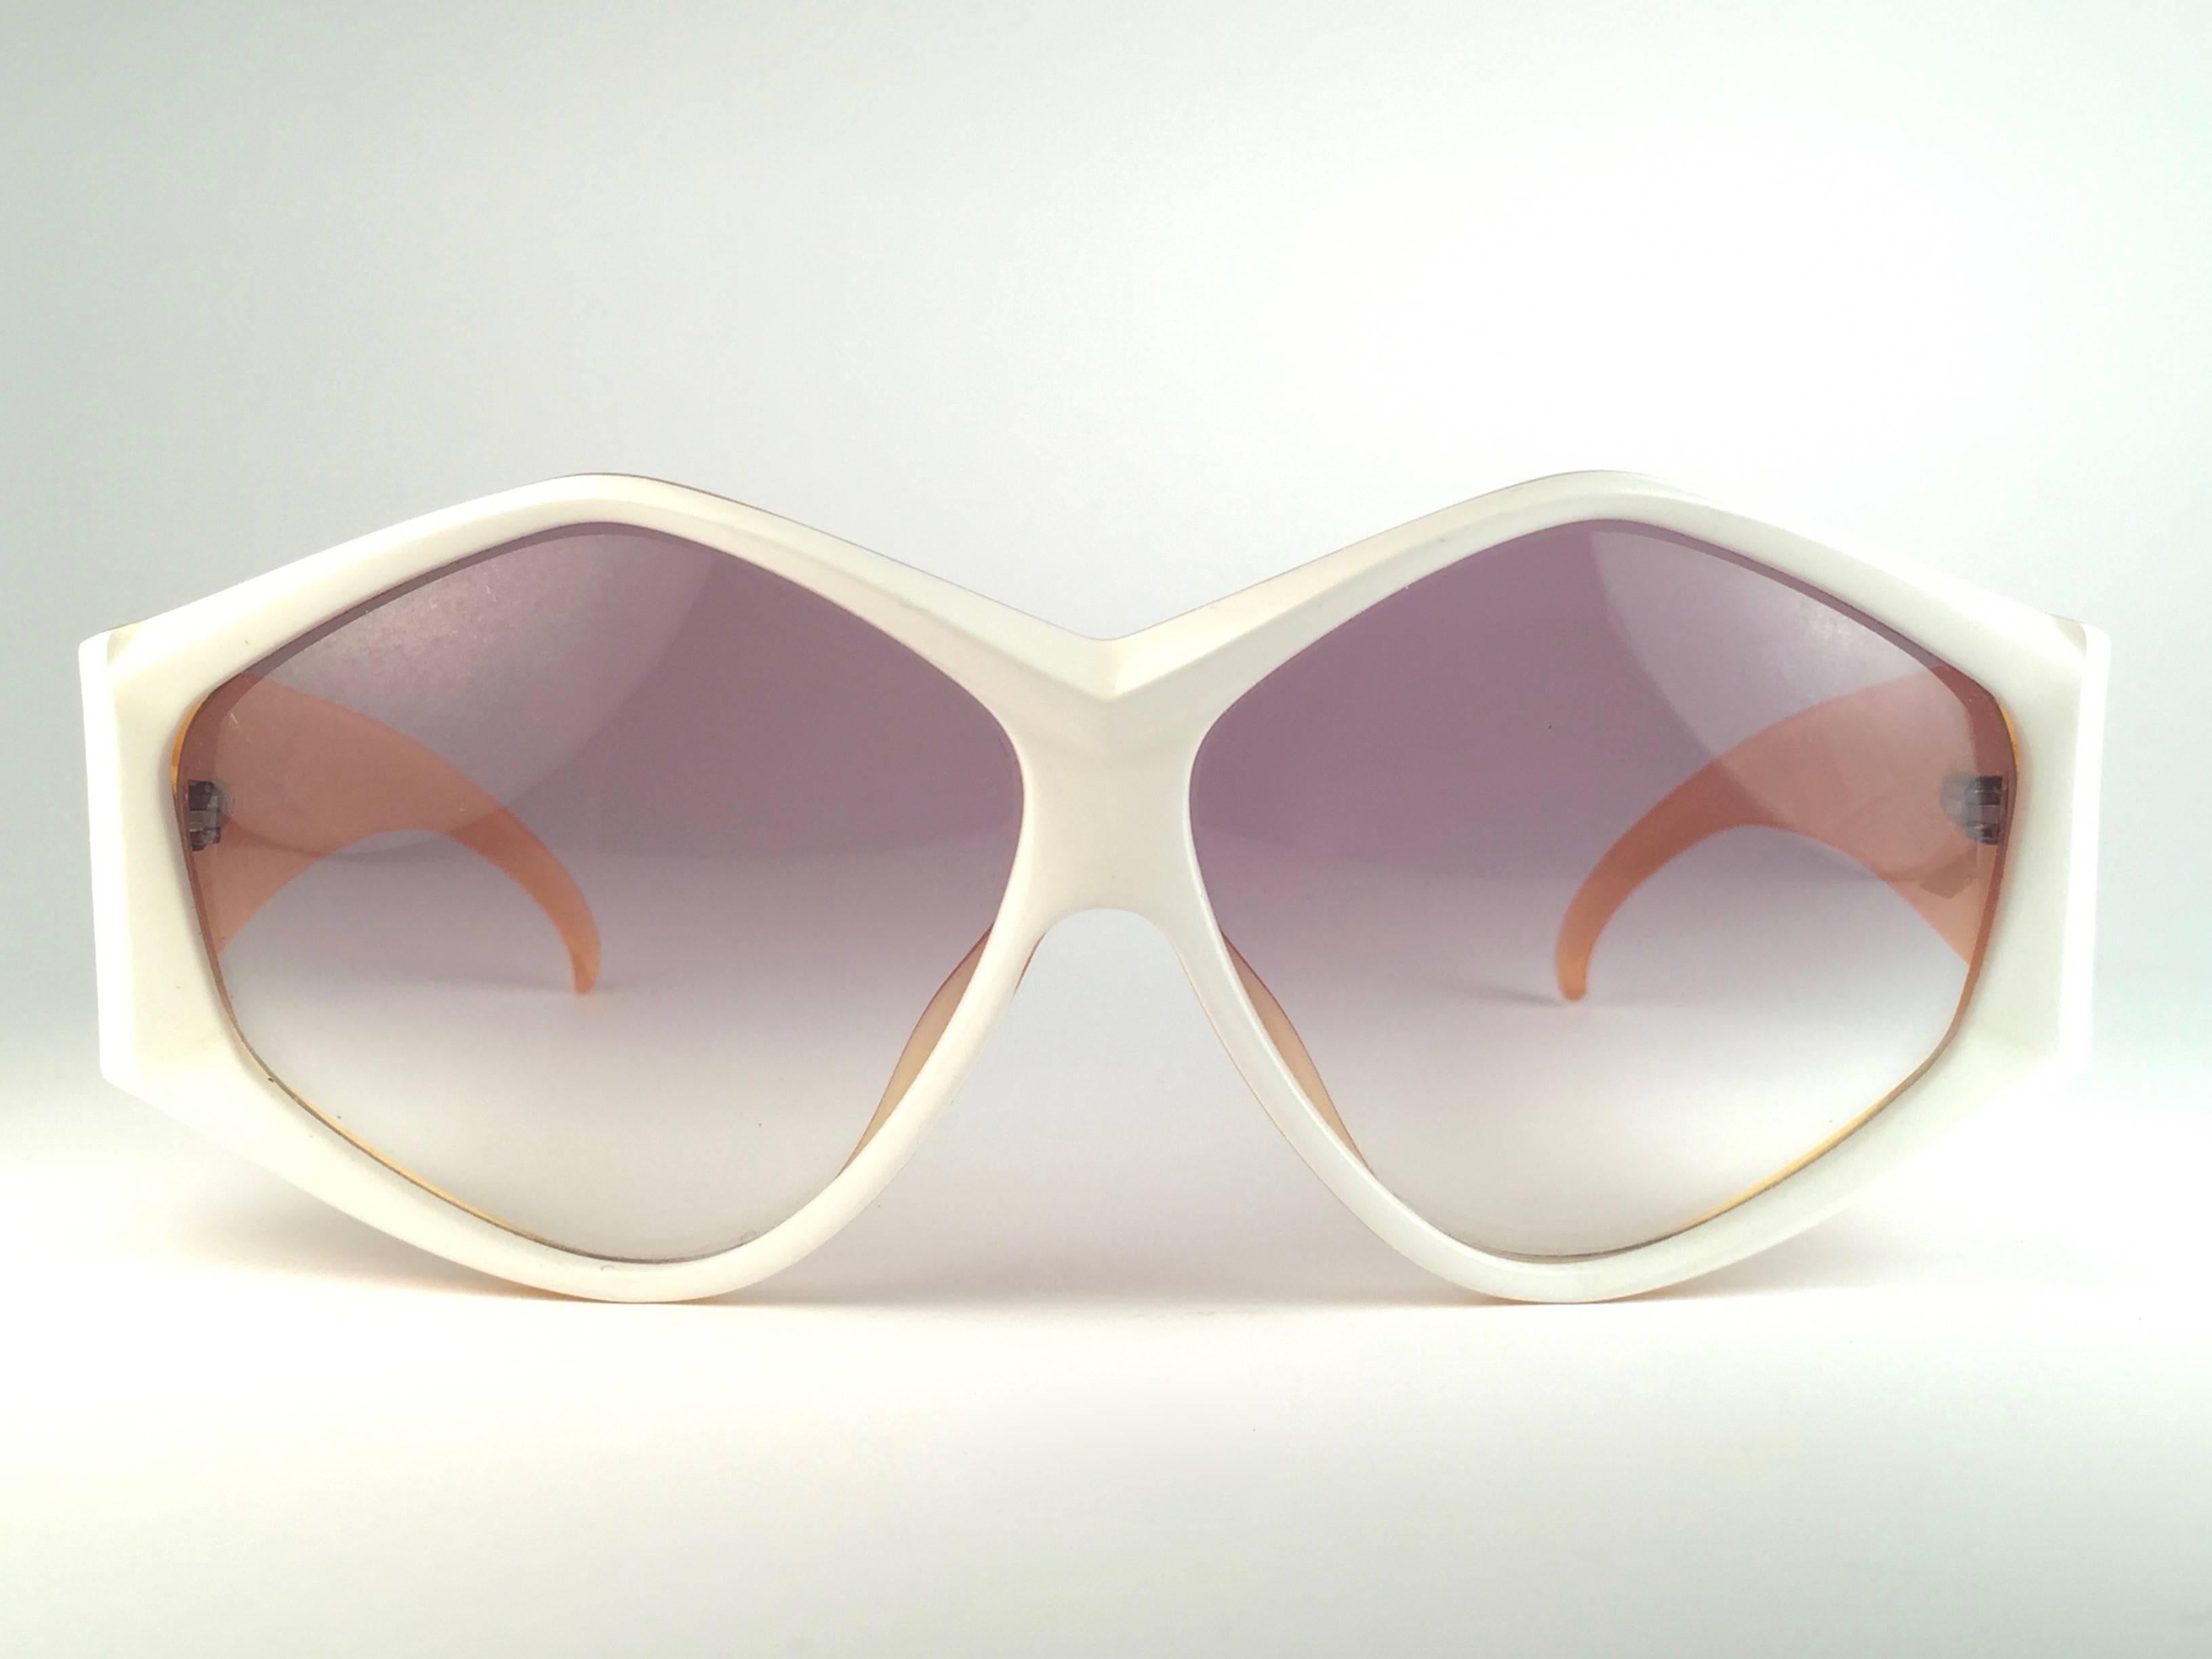 New Vintage Christian Dior 2230 70 White Origami frame with spotless light brown gradient lenses. 

Fabriqué en Allemagne.
 
Produit et conçu dans les années 1970.

Une pièce de collection !

Neuf, jamais porté ou exposé. Livré avec sa pochette